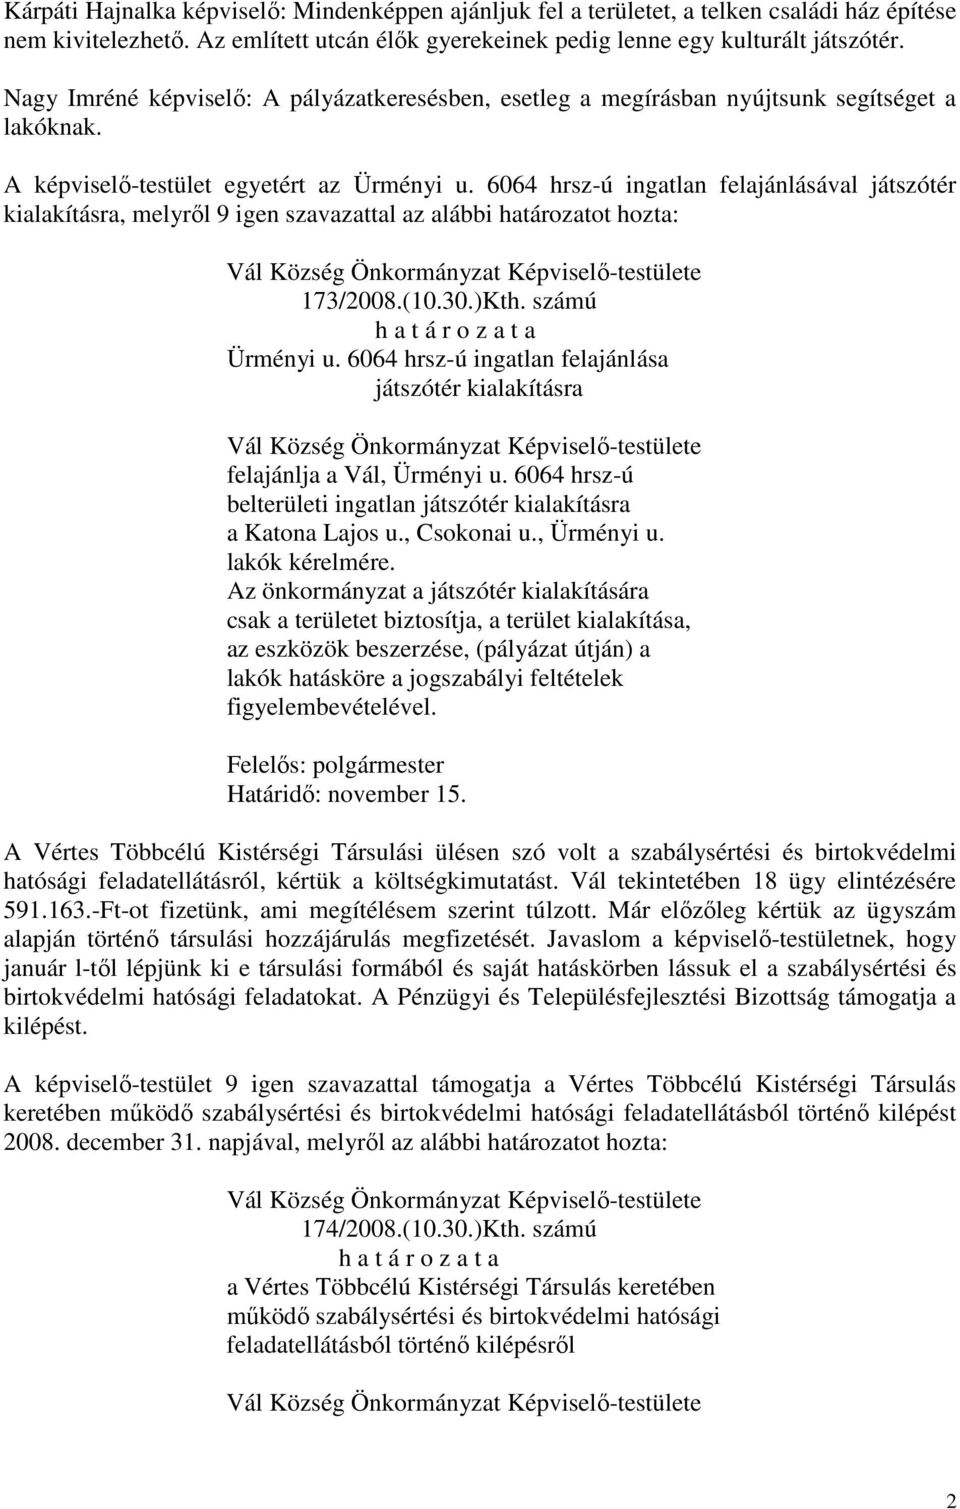 6064 hrsz-ú ingatlan felajánlásával játszótér kialakításra, melyről 9 igen szavazattal az alábbi határozatot hozta: 173/2008.(10.30.)Kth. számú Ürményi u.